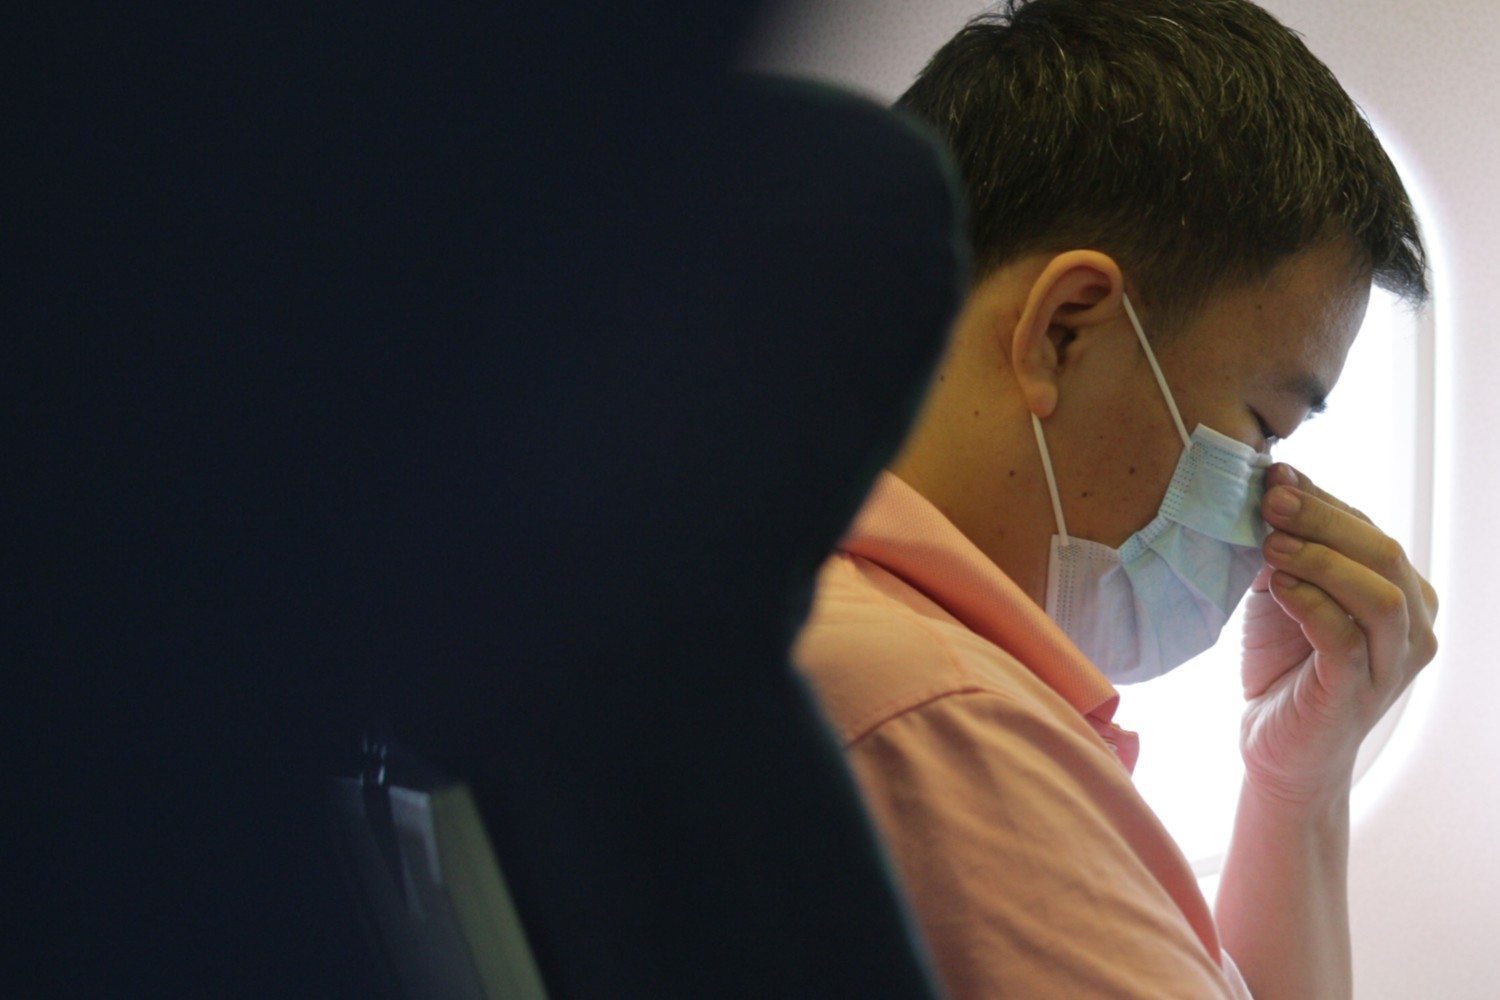 一架美国航班的乘客确诊患有麻疹，大家外出多谨慎！